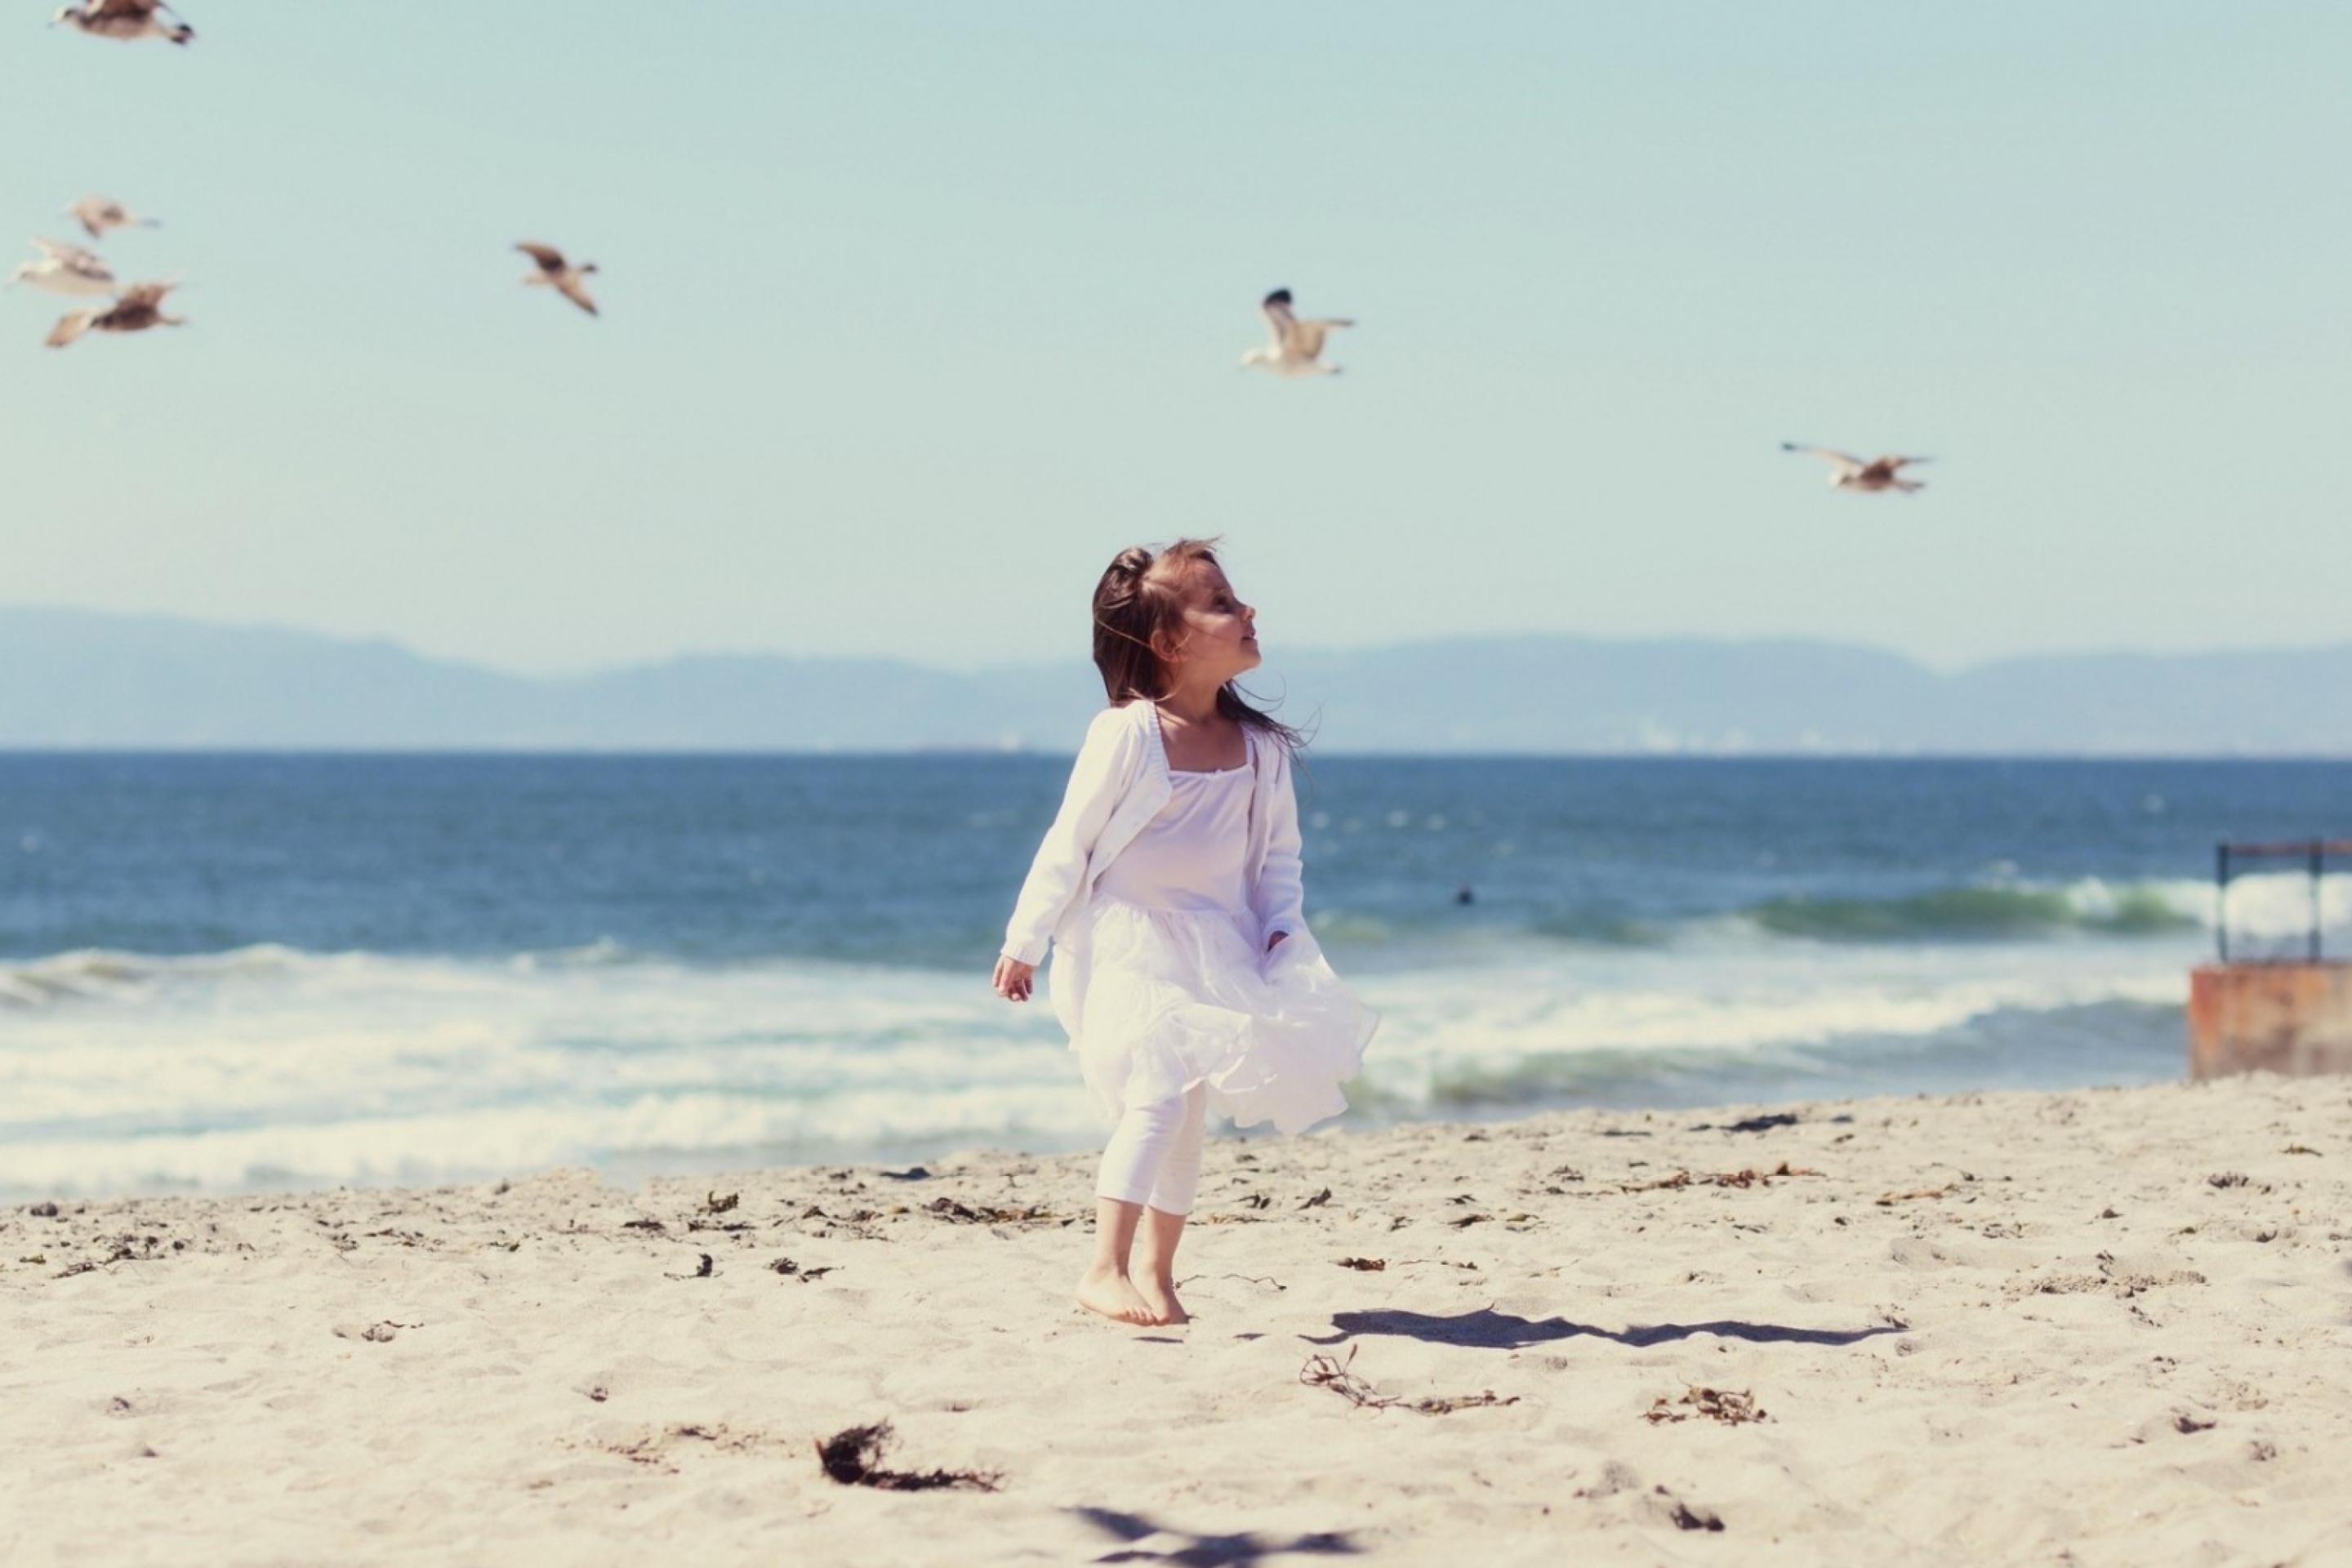 Little Girl And Seagulls On Beach wallpaper 2880x1920